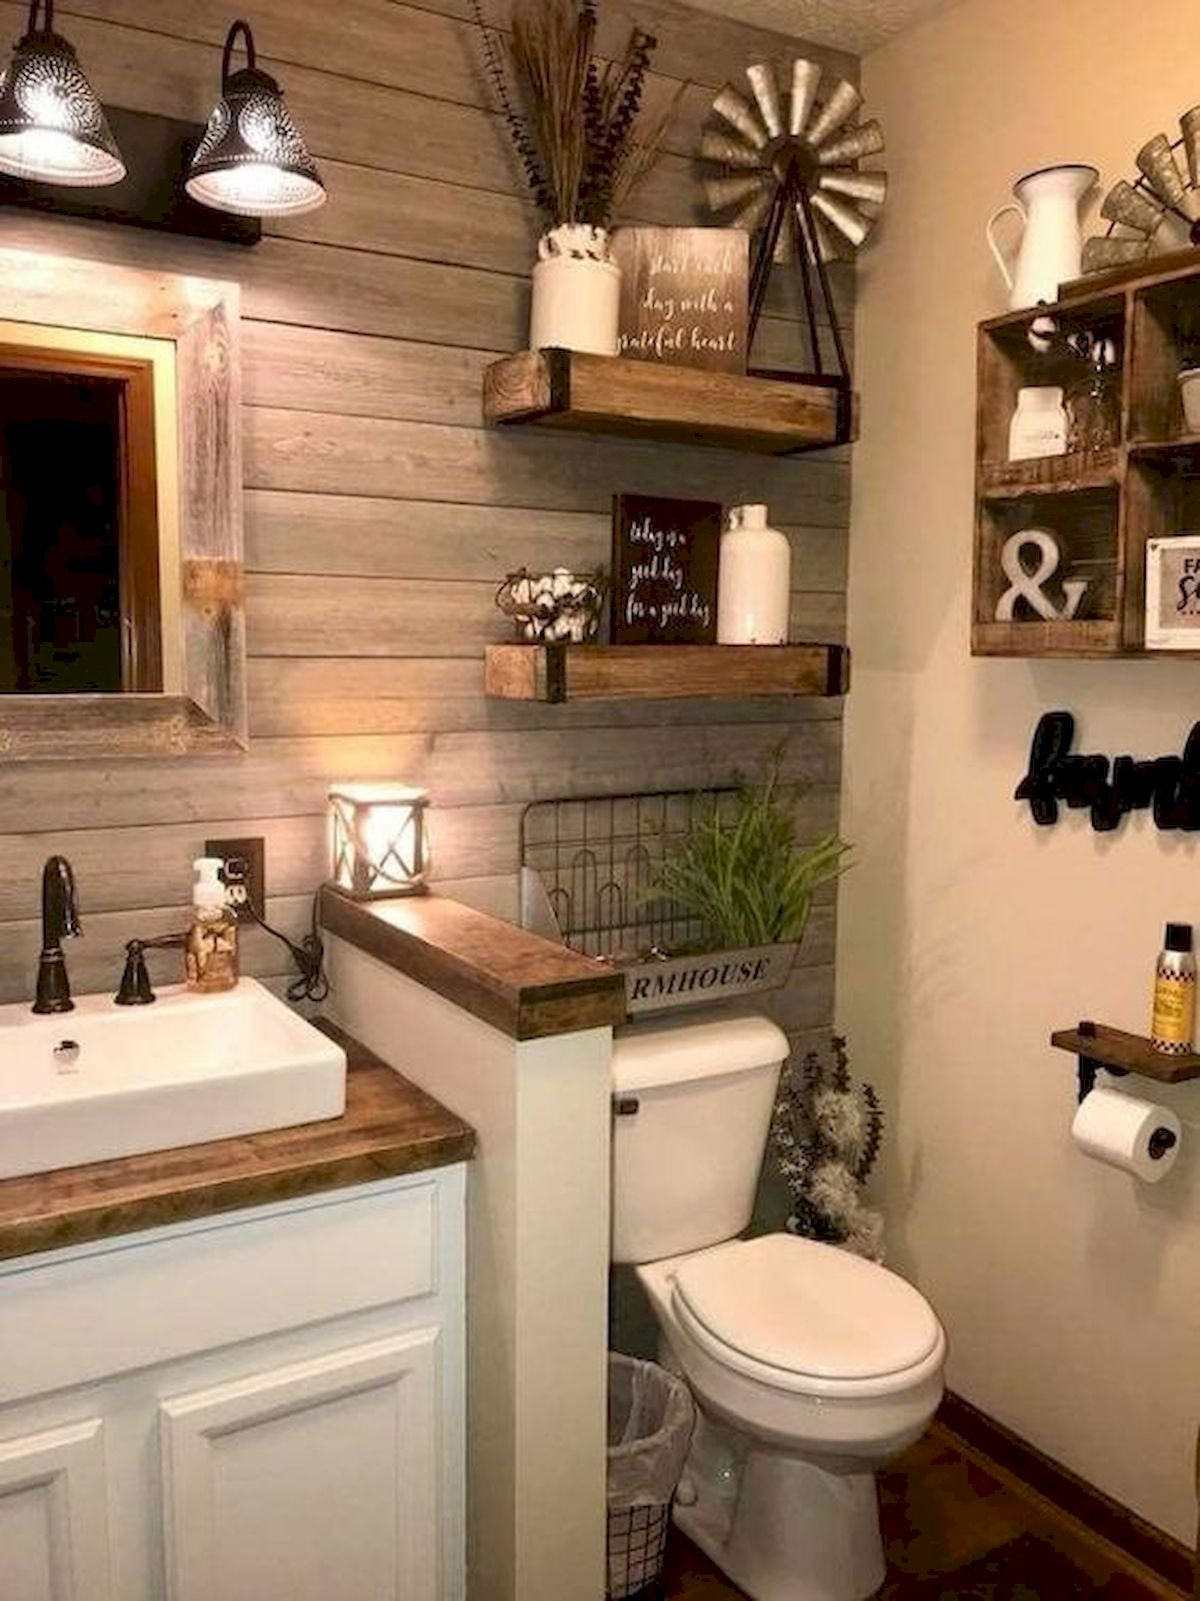 Wall Decor For Bathrooms
 59 Best Farmhouse Wall Decor Ideas for Bathroom Ideaboz